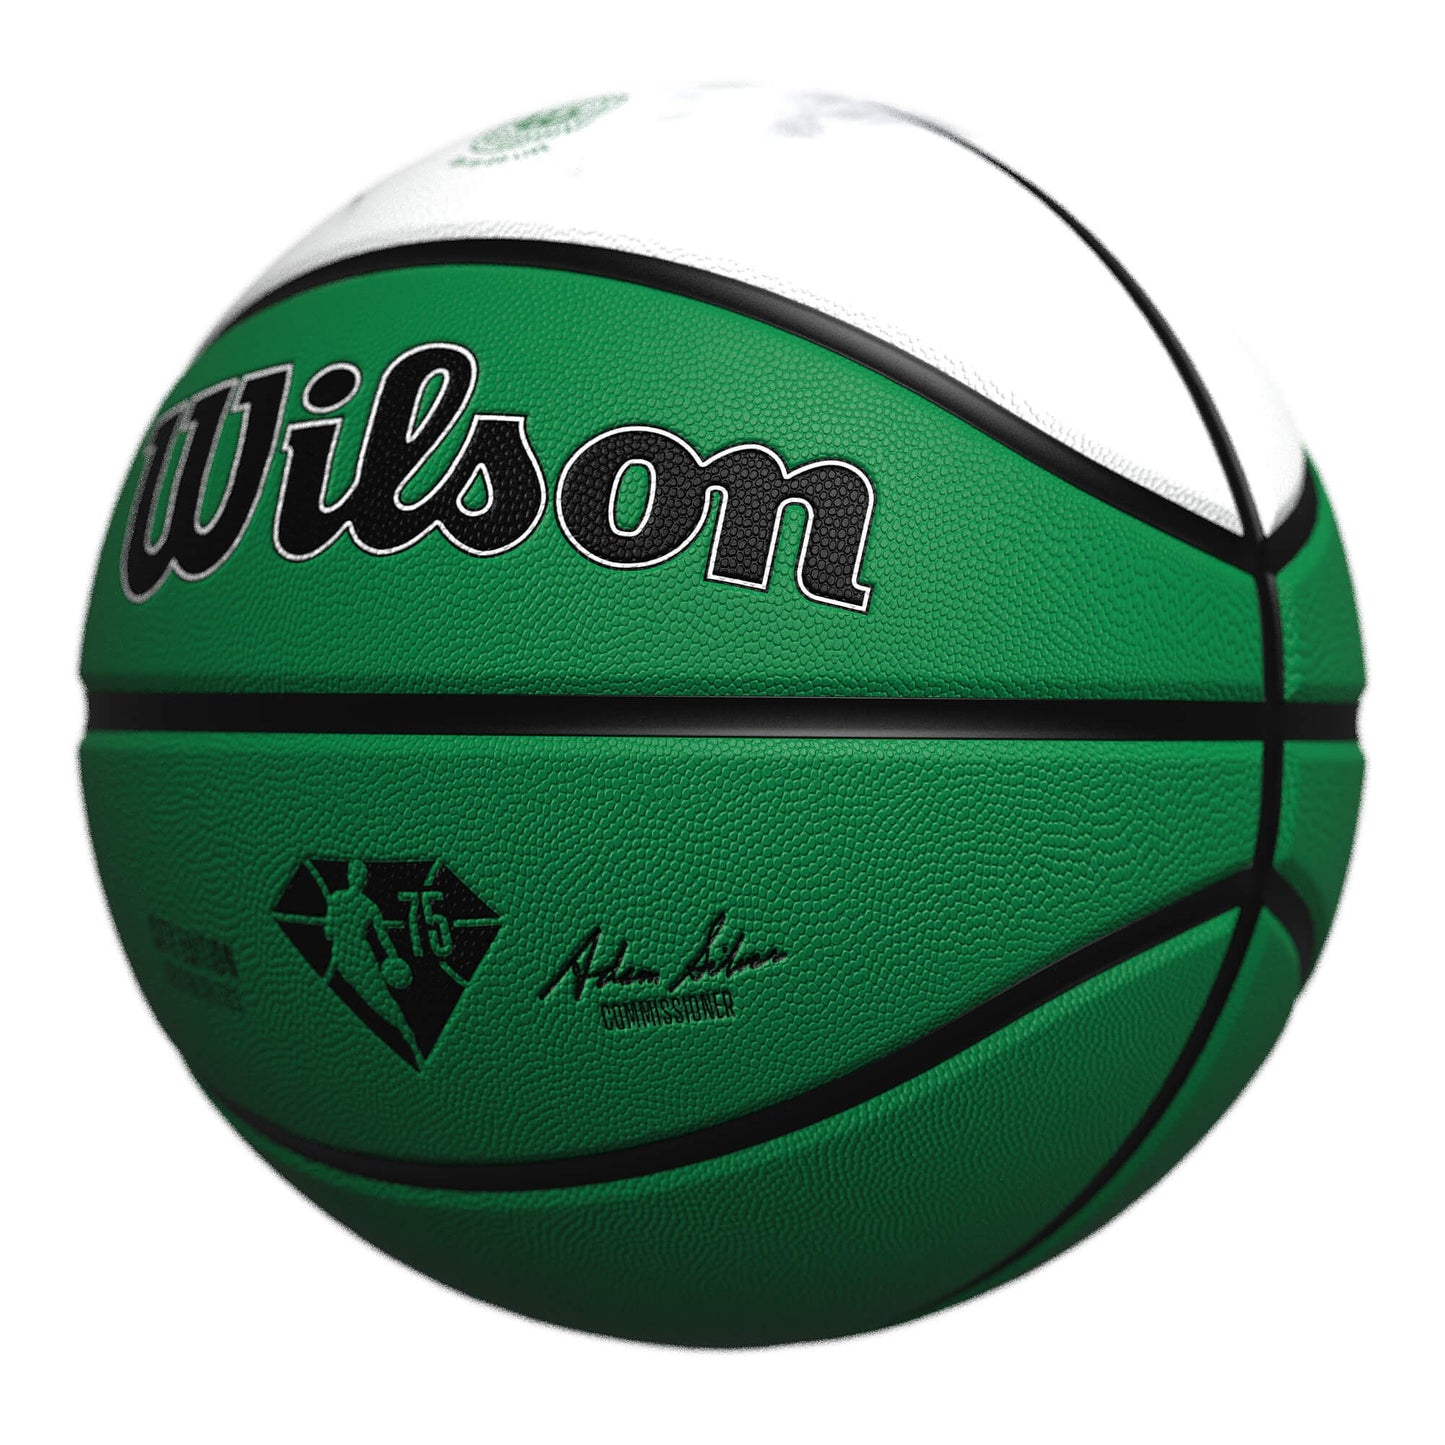 Wilson NBA Team City Collector Basketball Boston Celtics - Green (sz. 7)